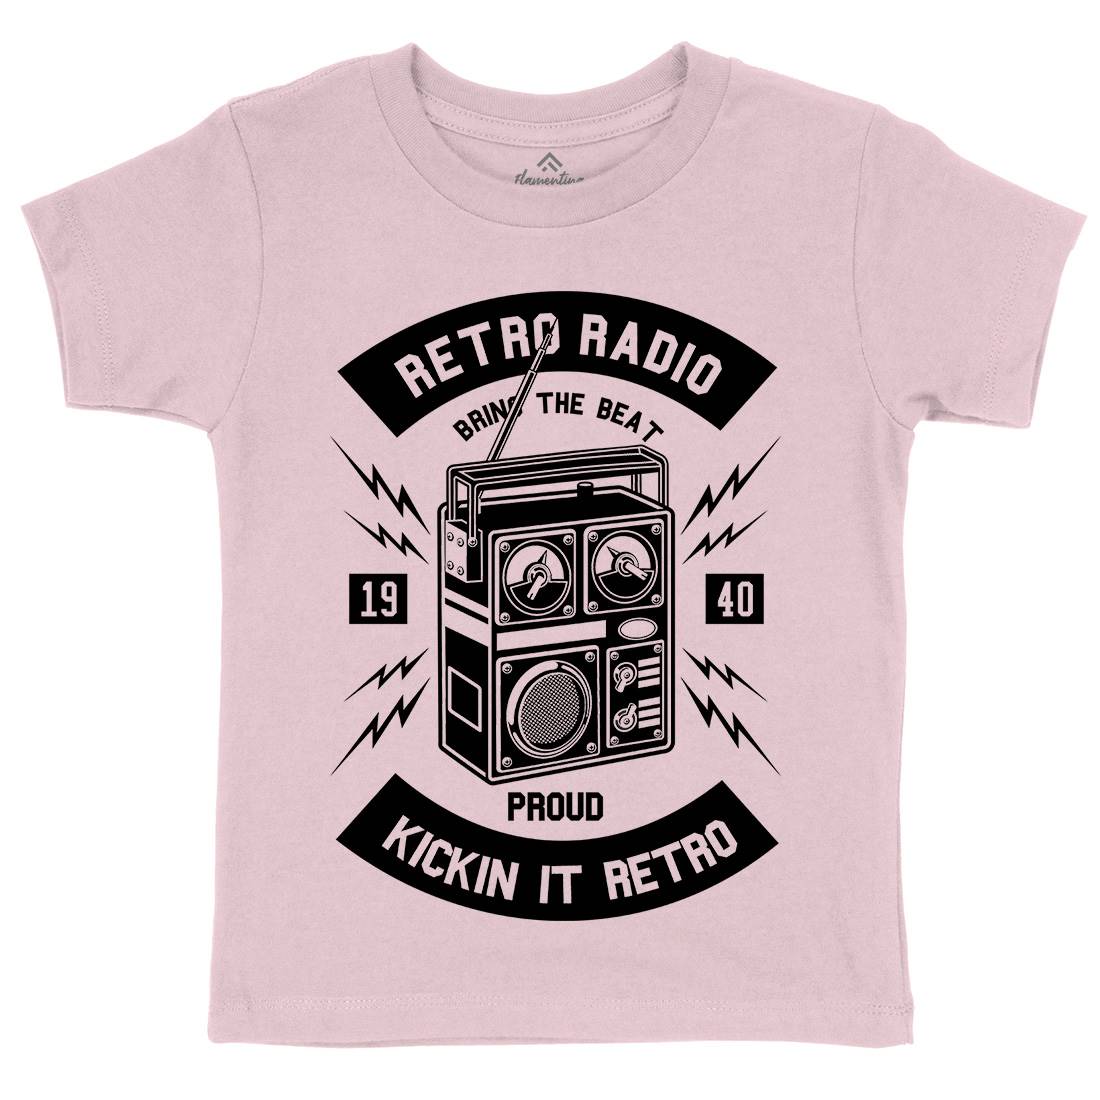 Retro Radio Kids Crew Neck T-Shirt Music B610